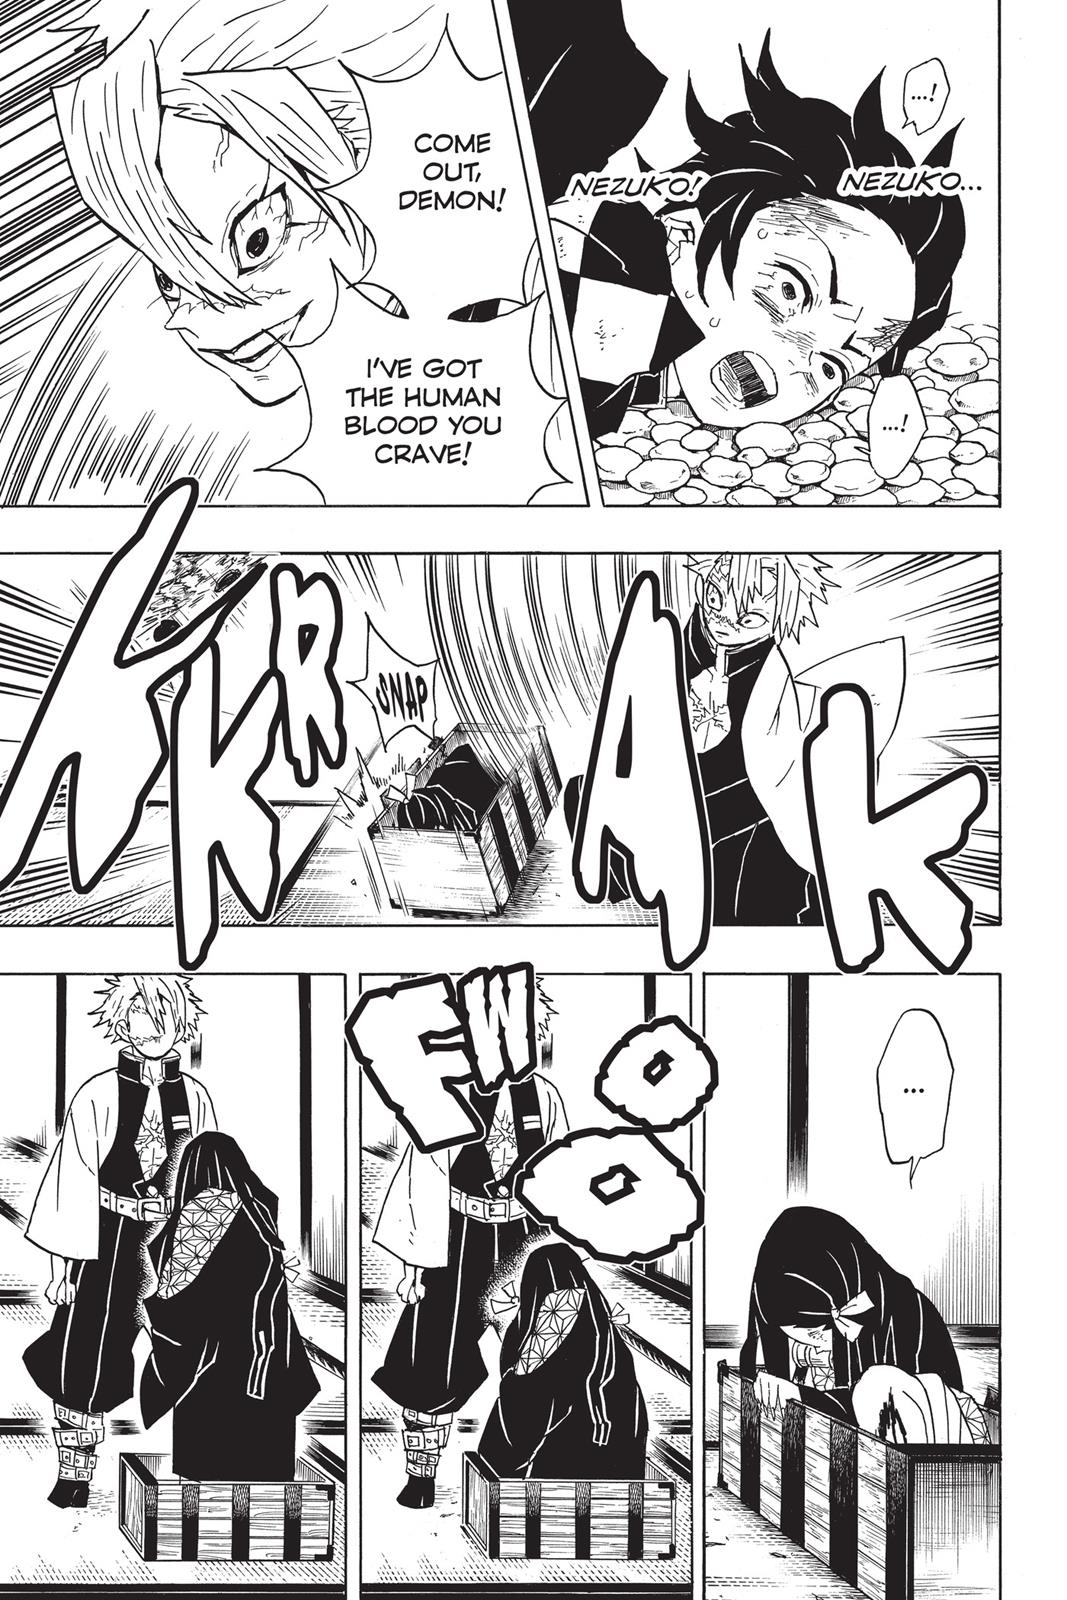 Demon Slayer Manga Manga Chapter - 47 - image 4